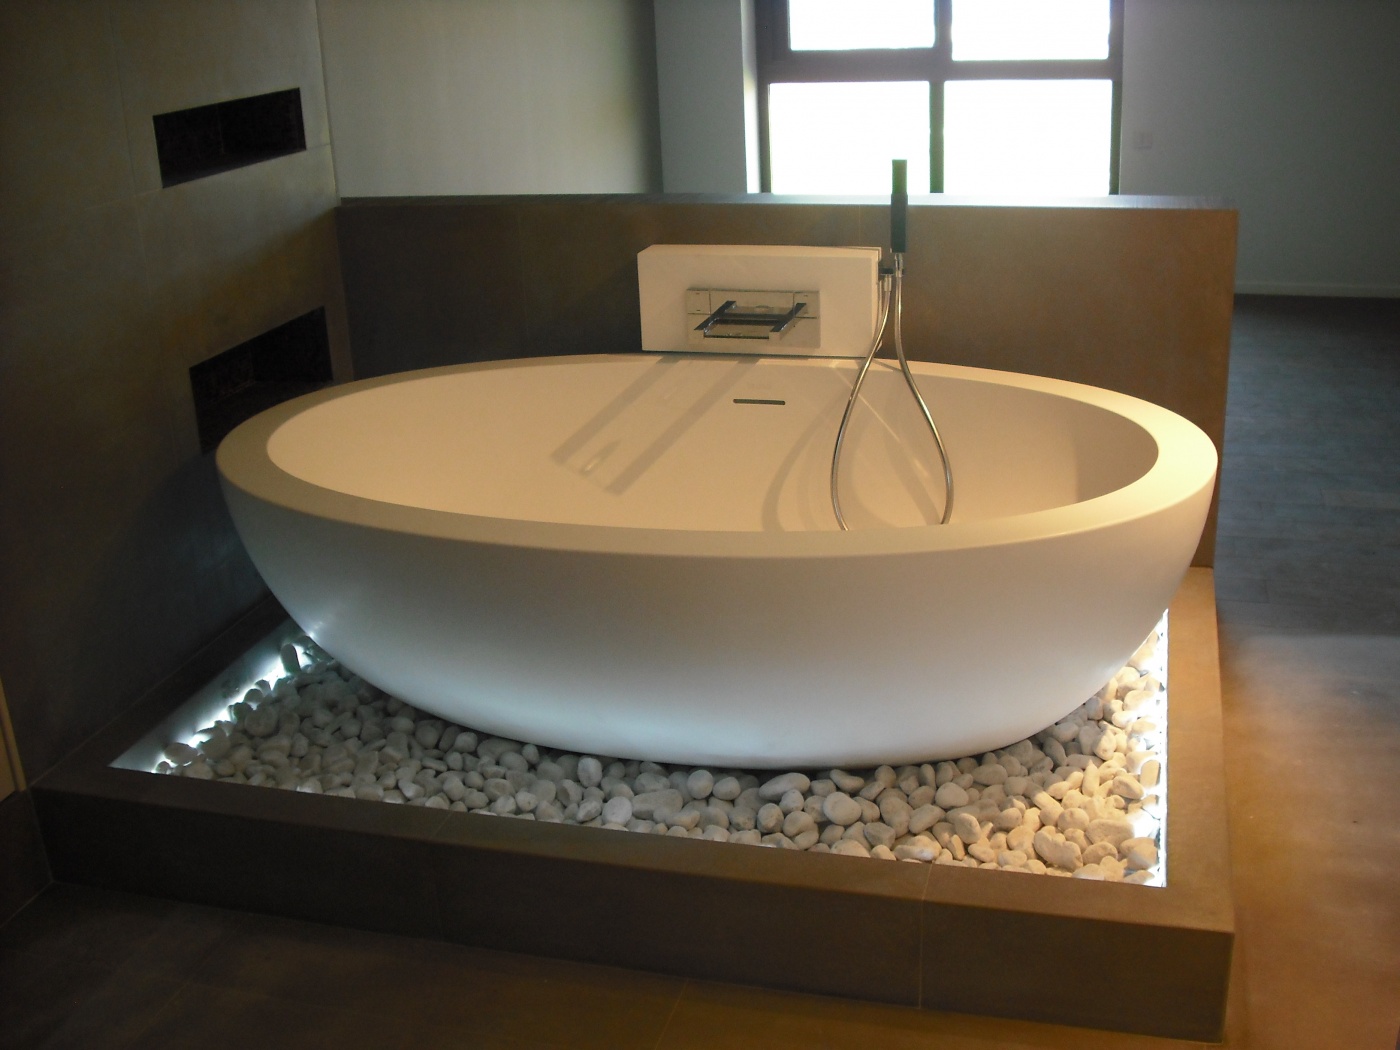 Onyx Salle de bain design en pierre Gris Barcelone
Baignoire Boffi